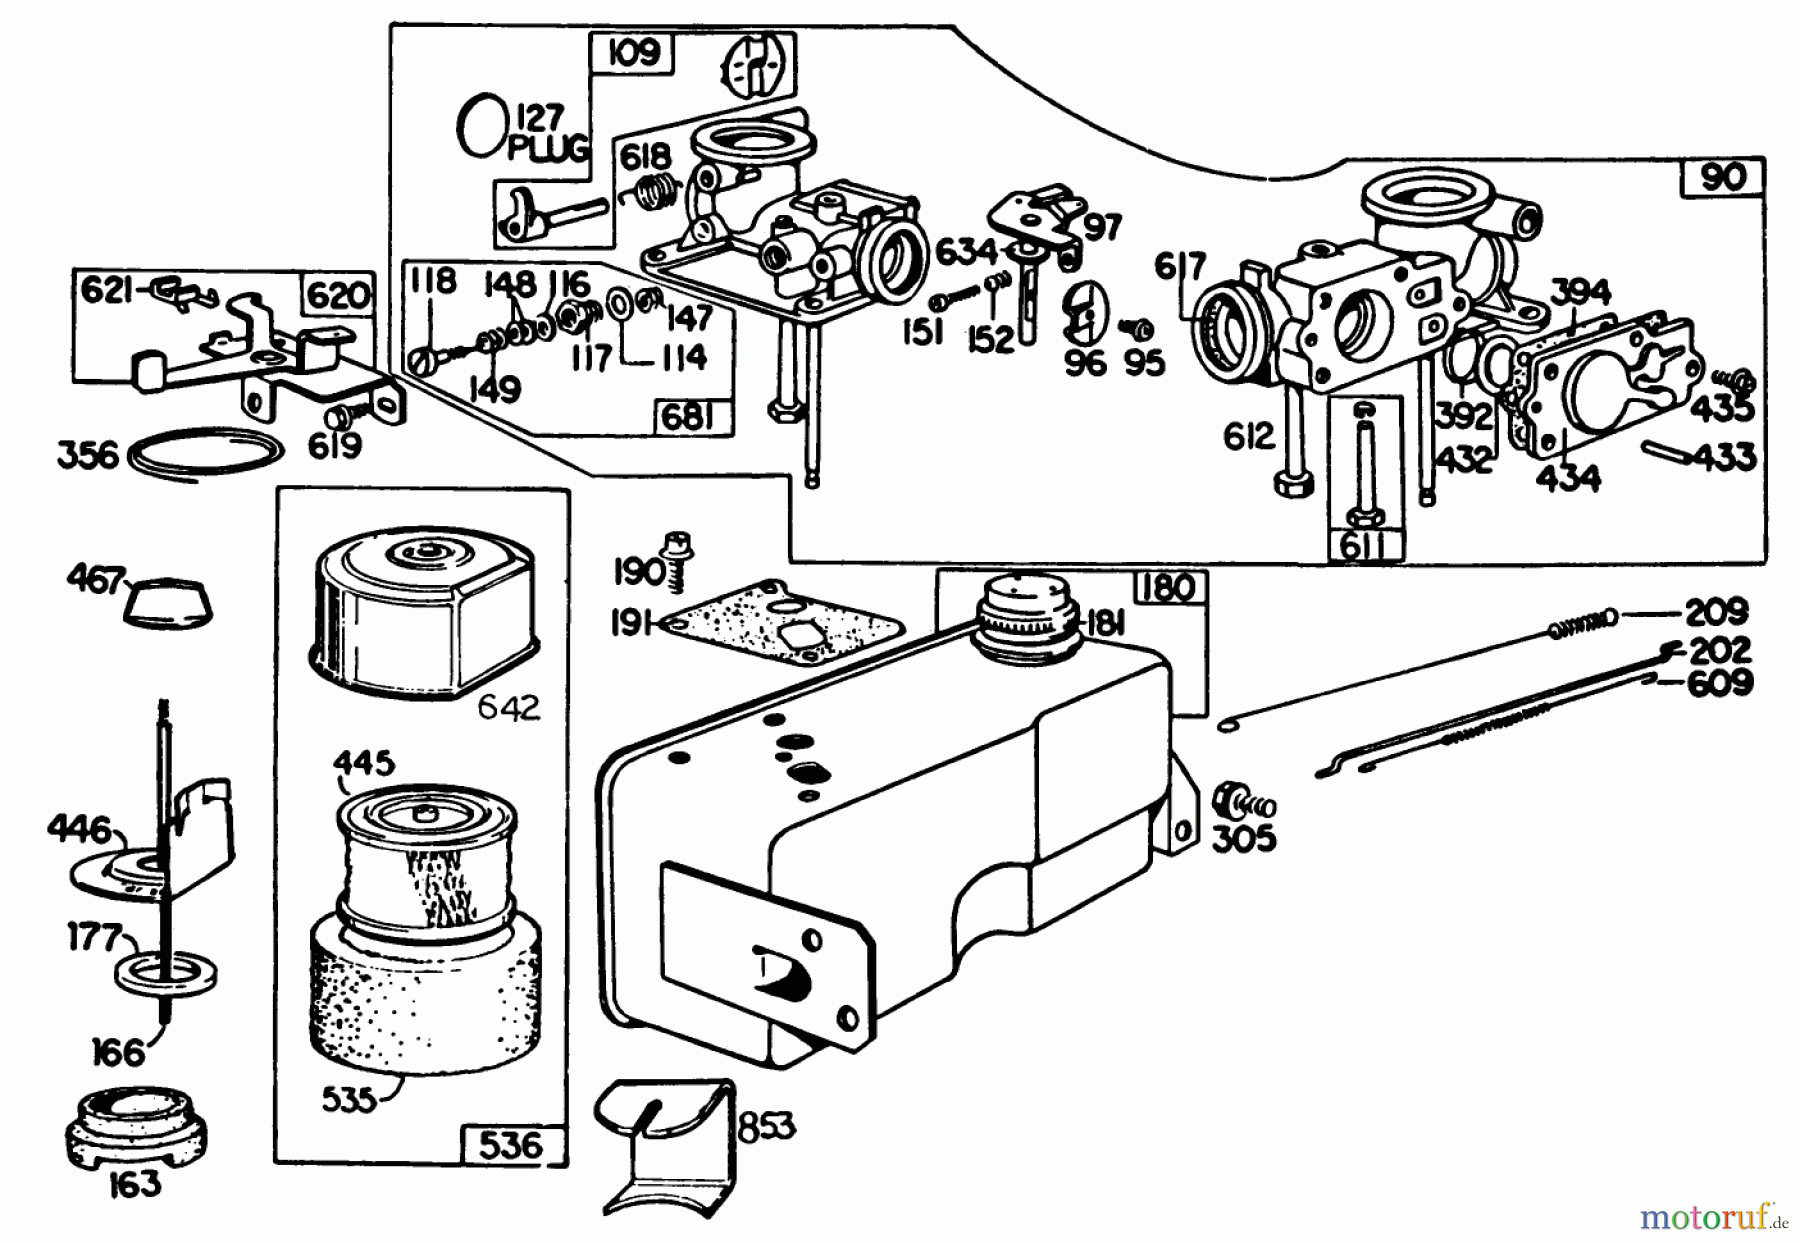  Toro Neu Mowers, Walk-Behind Seite 2 22015 - Toro Lawnmower, 1985 (5000001-5999999) ENGINE BRIGGS & STRATTON MODEL 131922-0163-01 #3